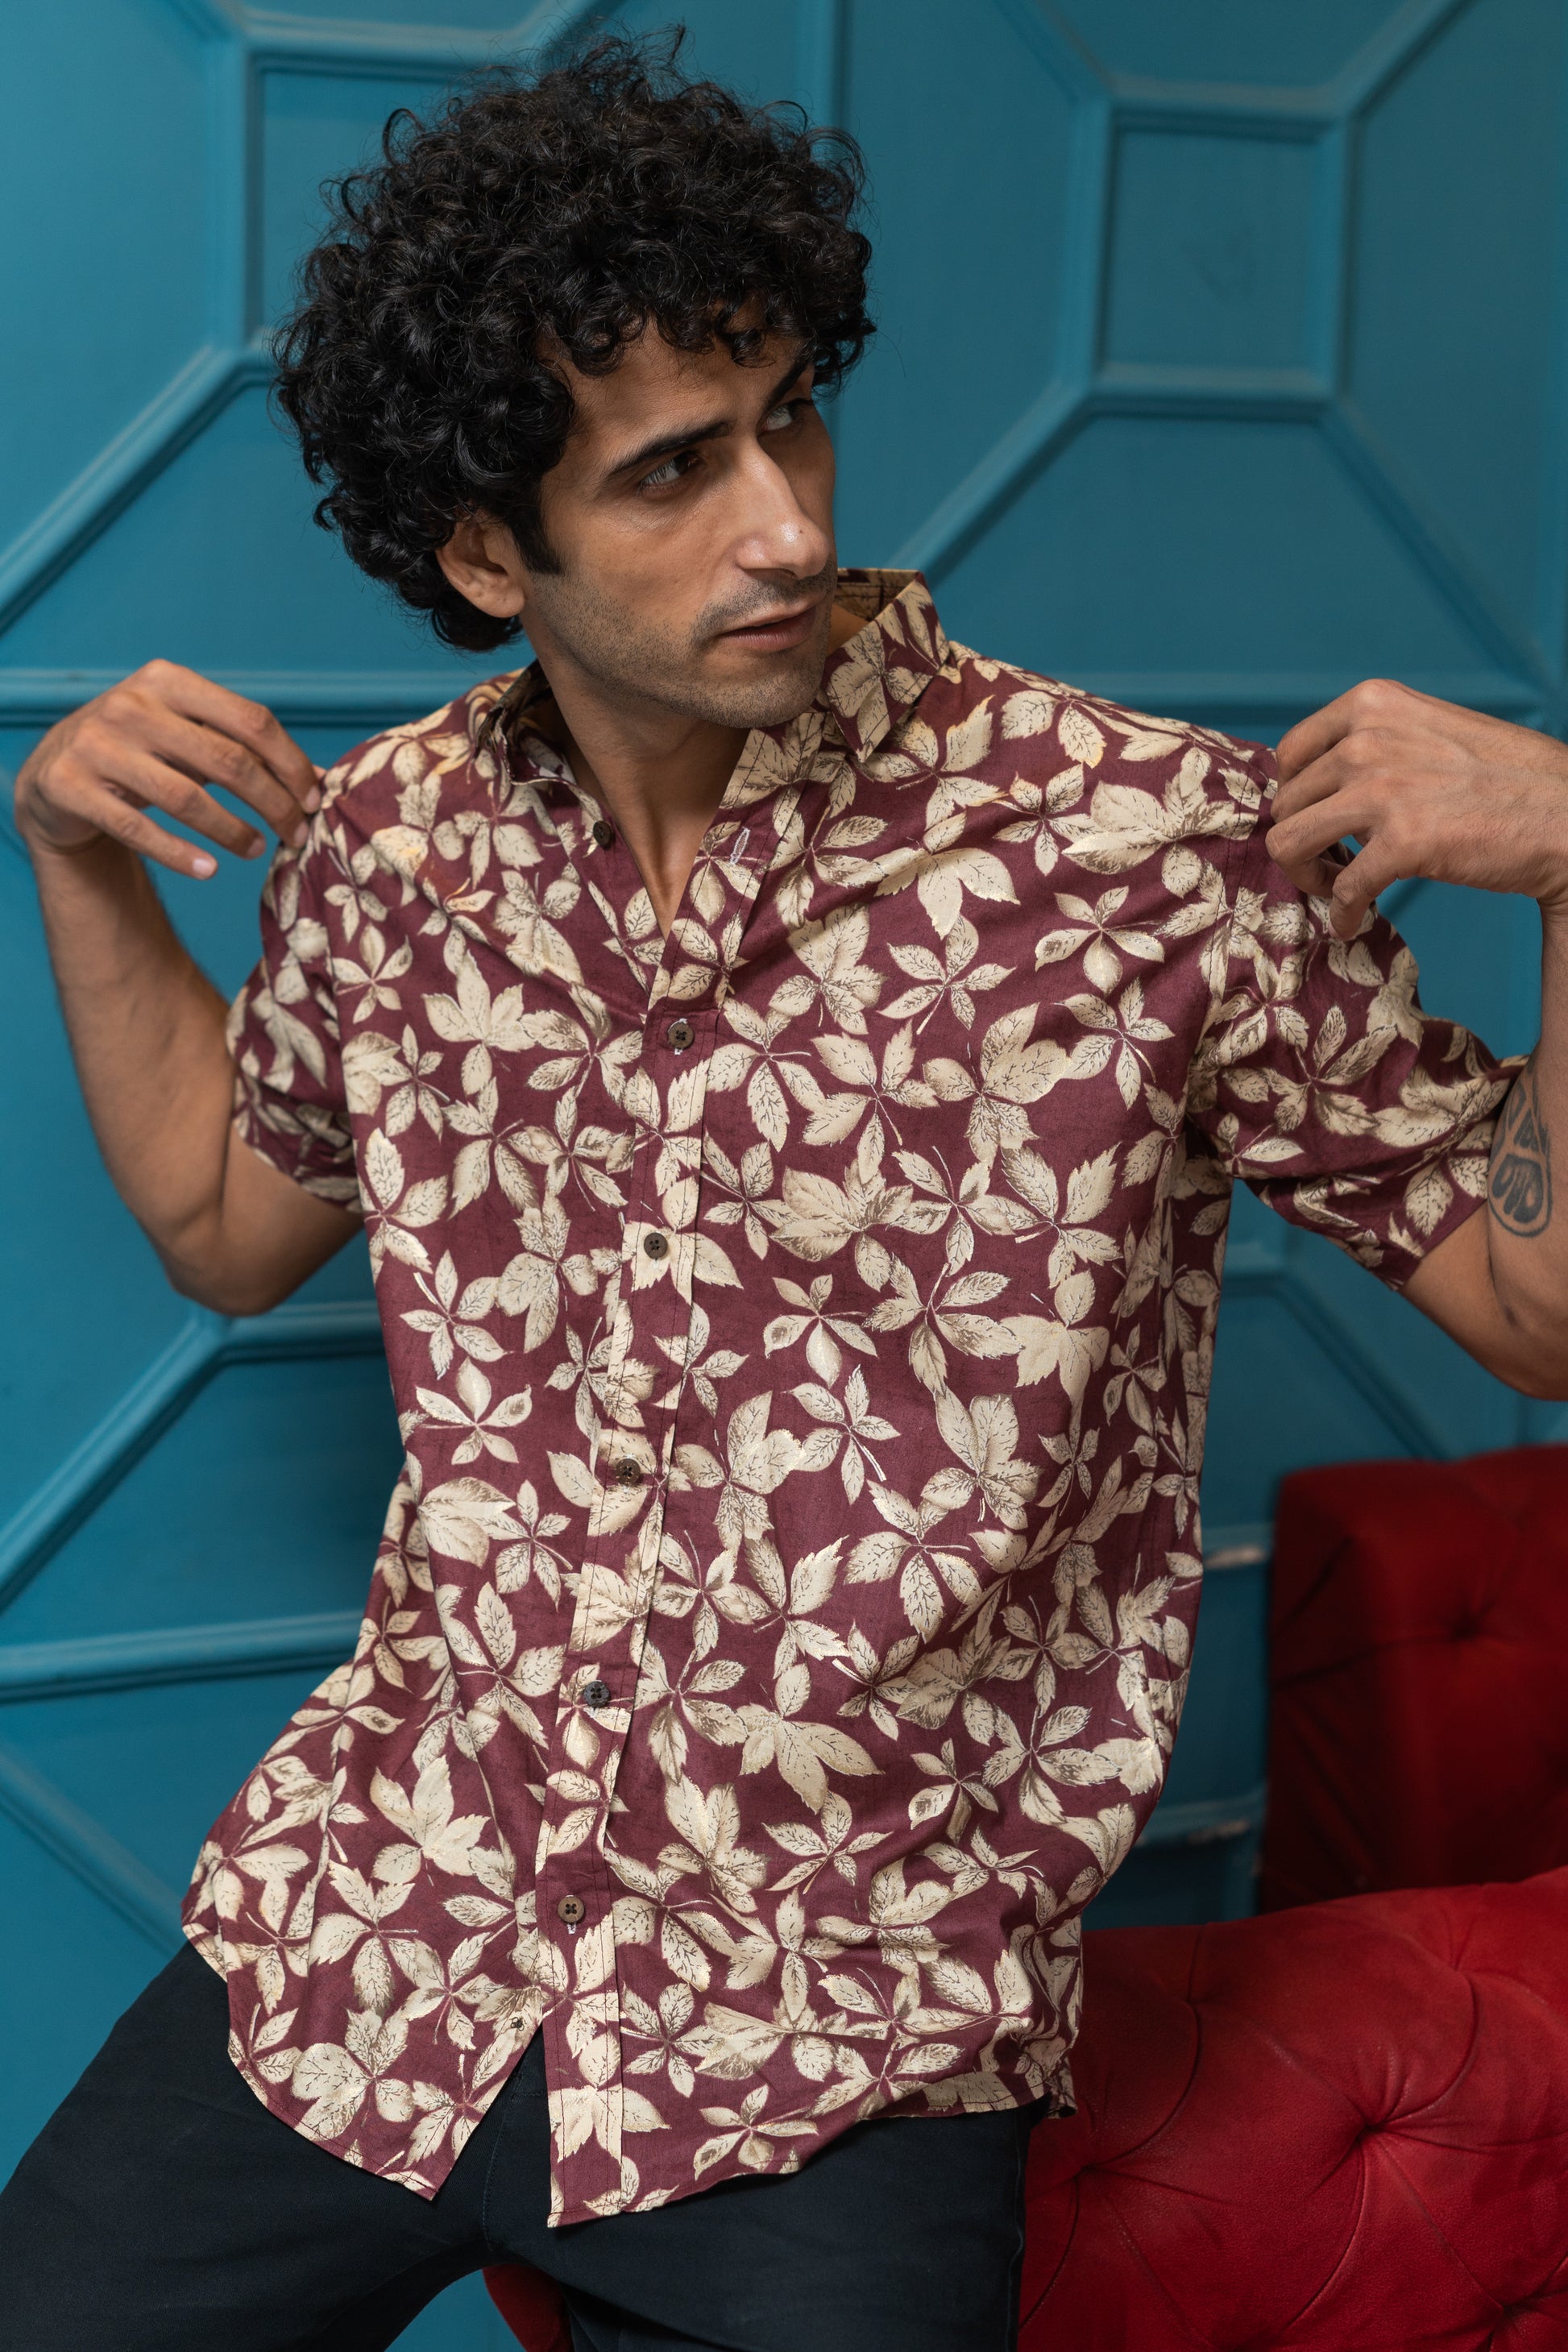 Indian man wearing maroon shirt